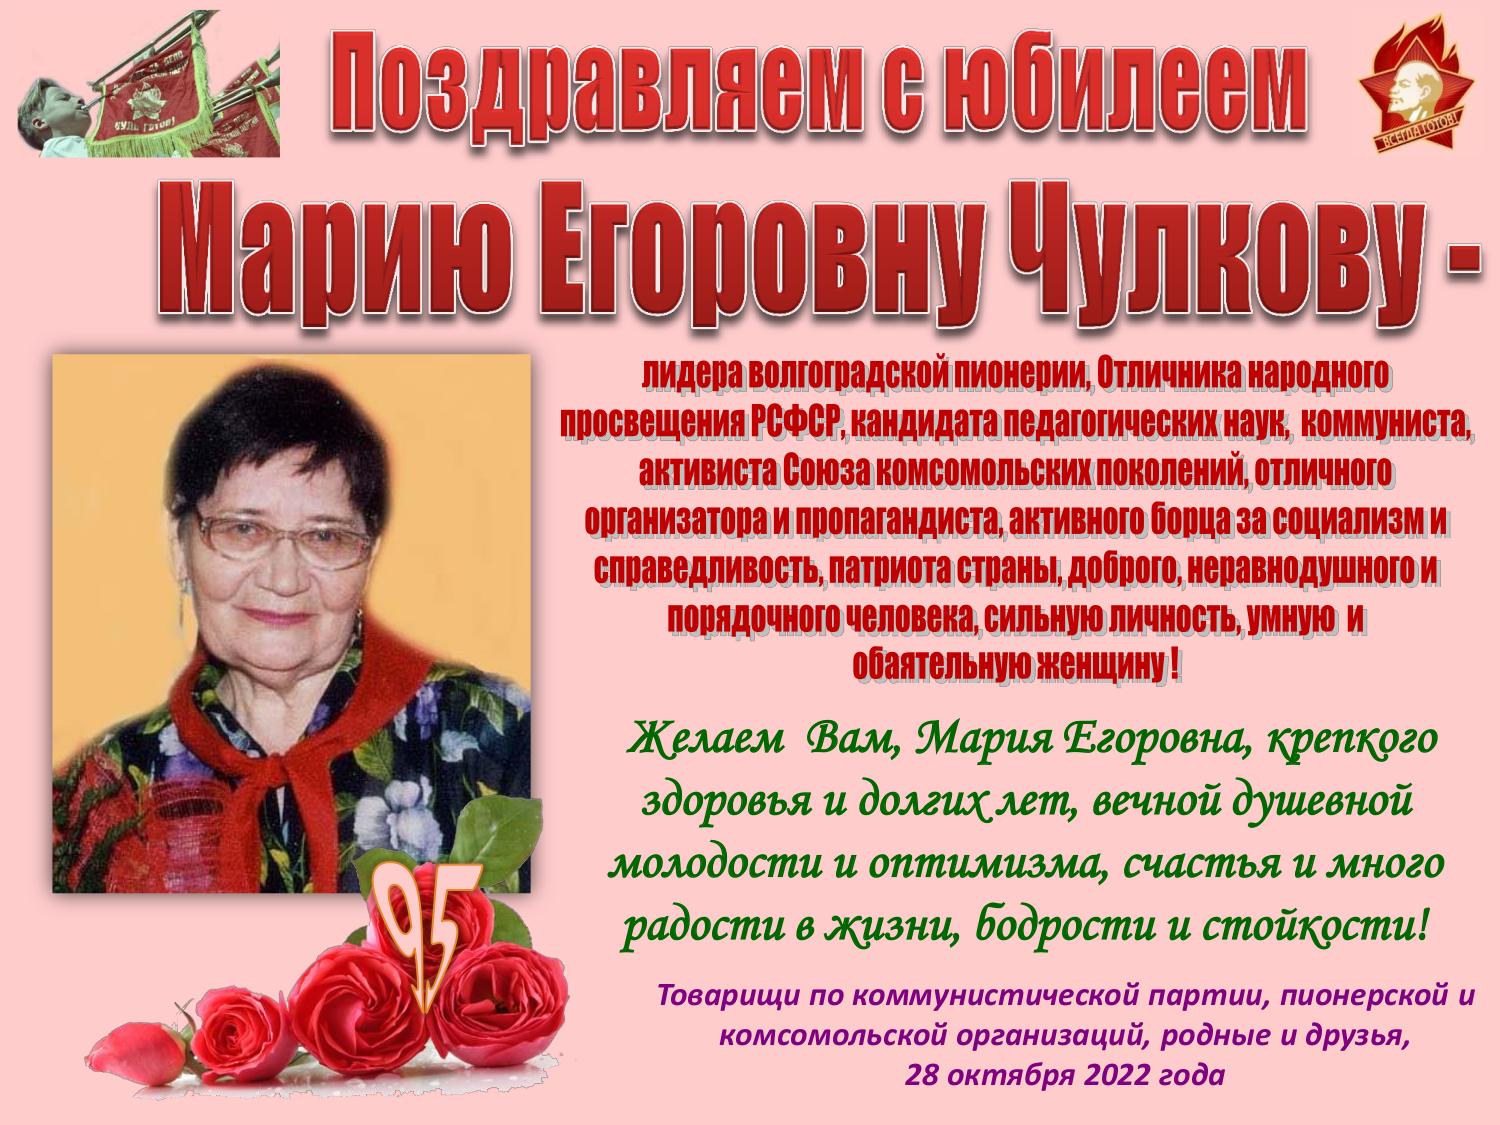 История жизни Чулковой Марии Егоровны